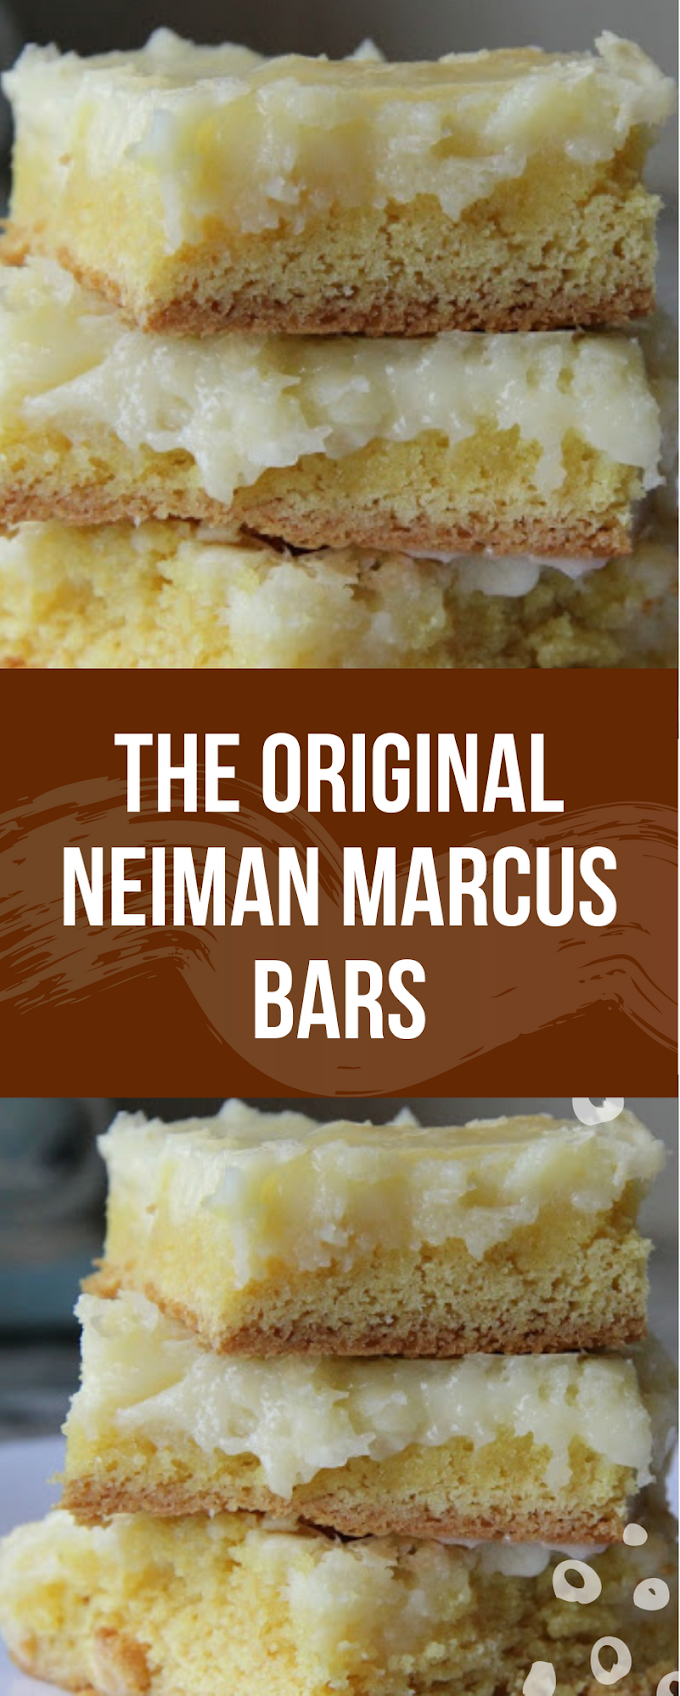 The Original Neiman Marcus Bars